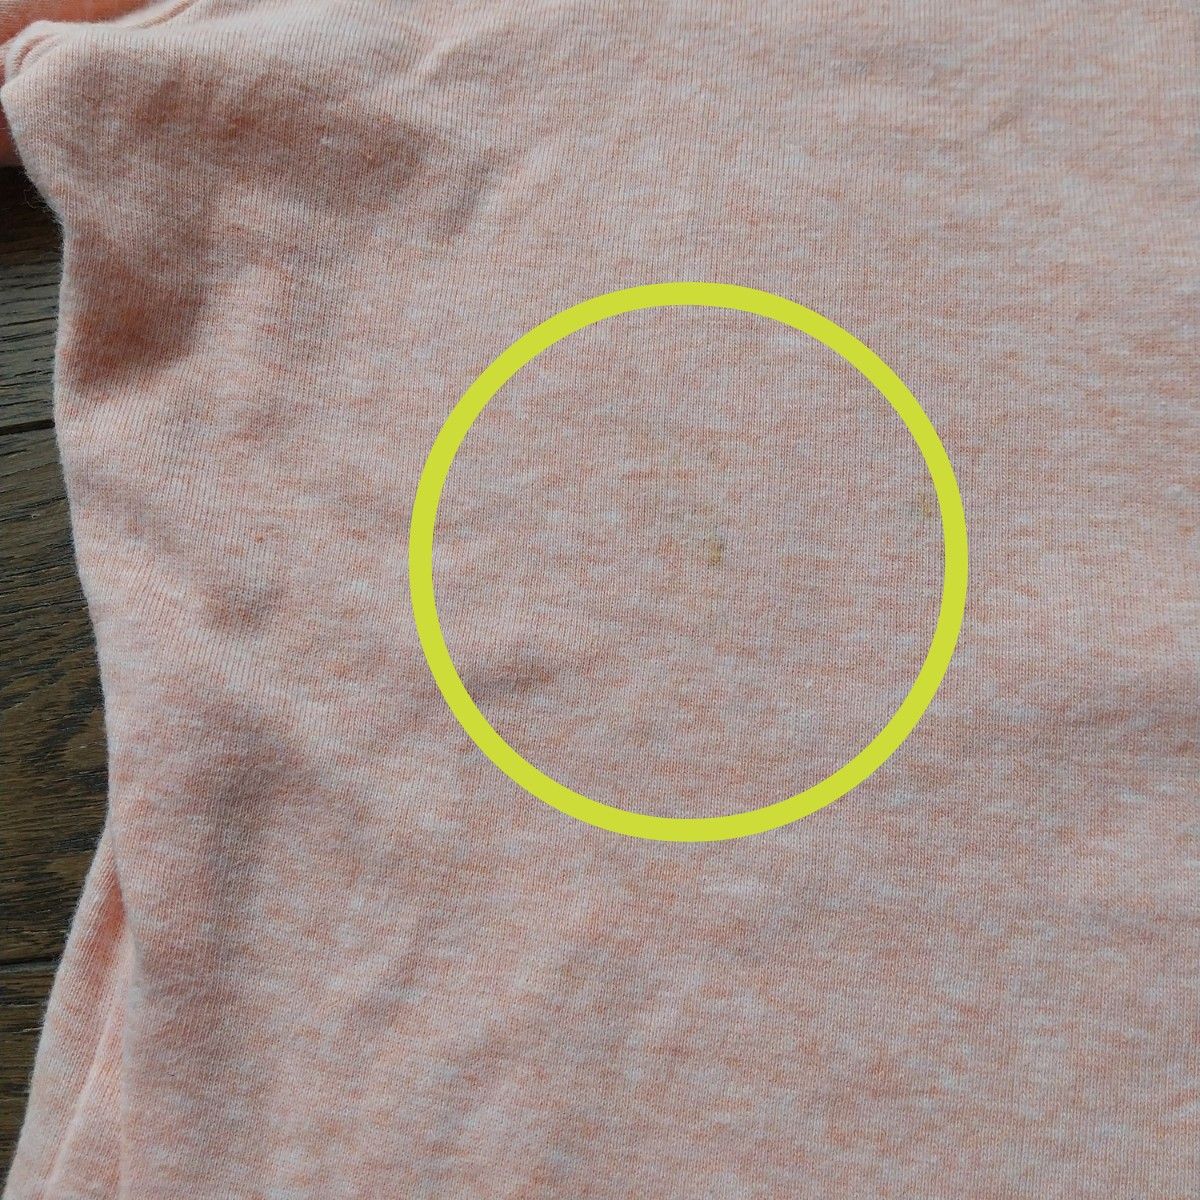 ユニクロ 半袖 Tシャツ 綿 杢カラー サーモンピンク ターコイズブルー 伸縮性 プレミアムコットン